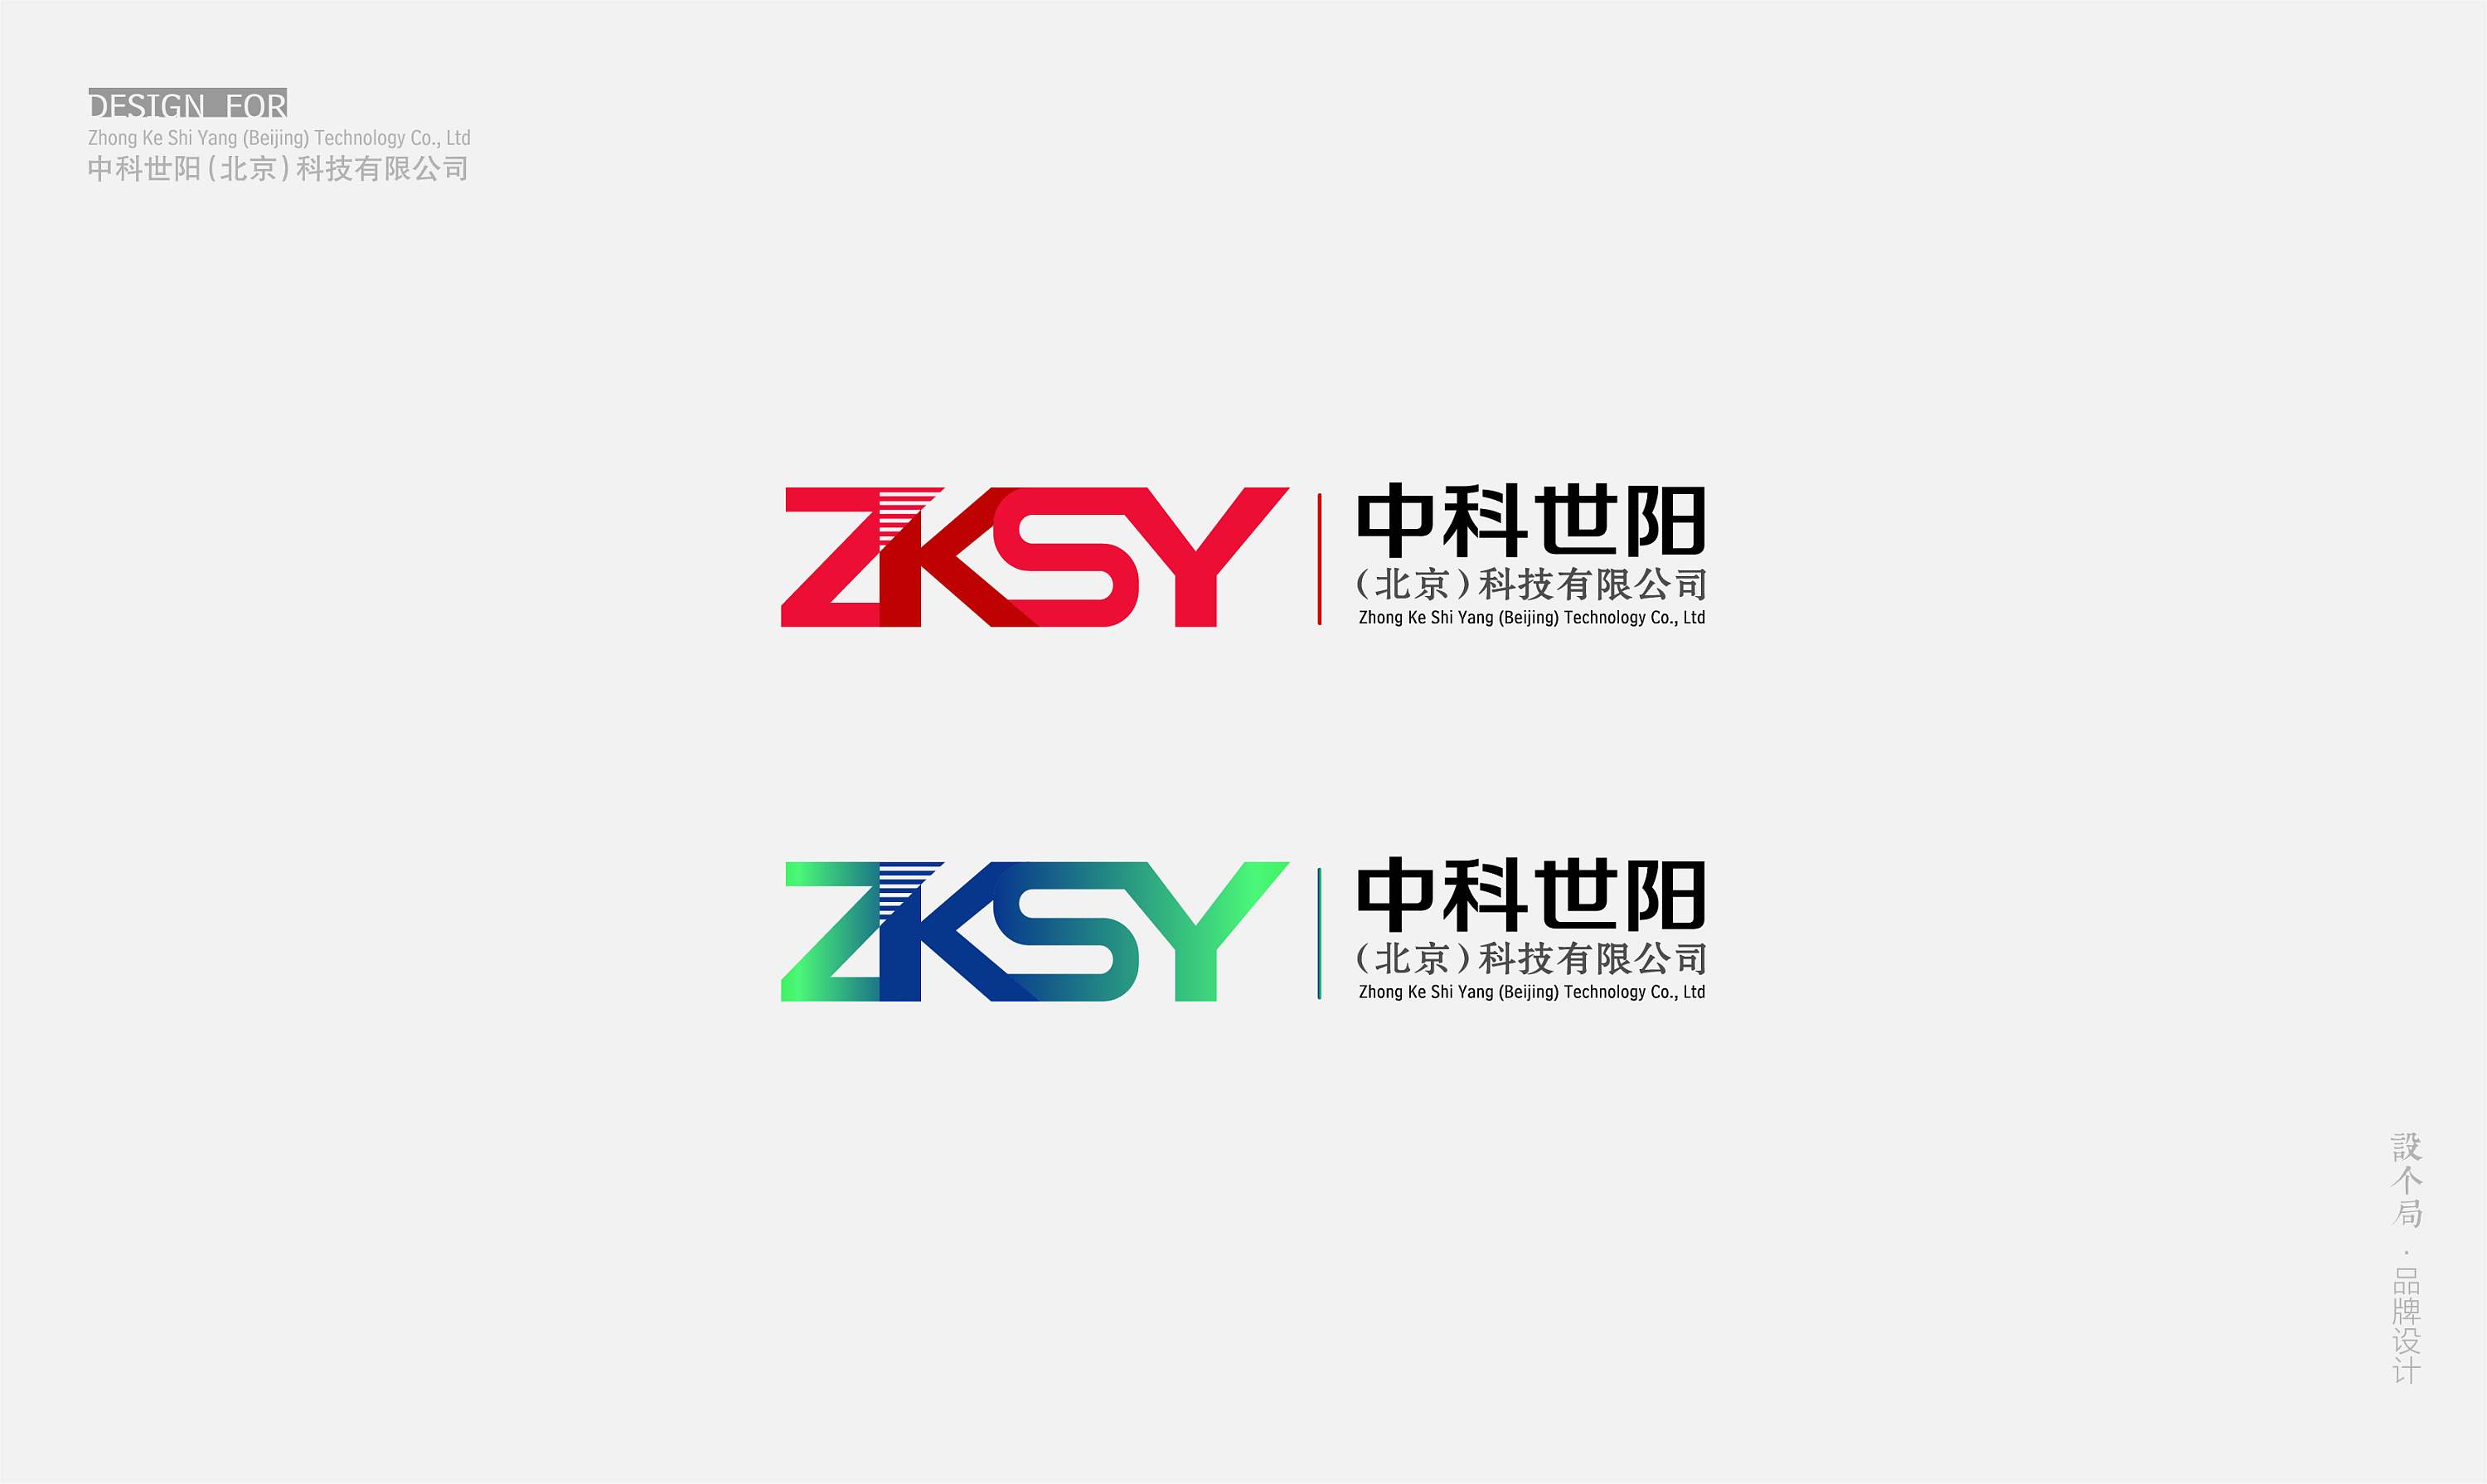 中科世阳(北京)科技有限公司 logo设计